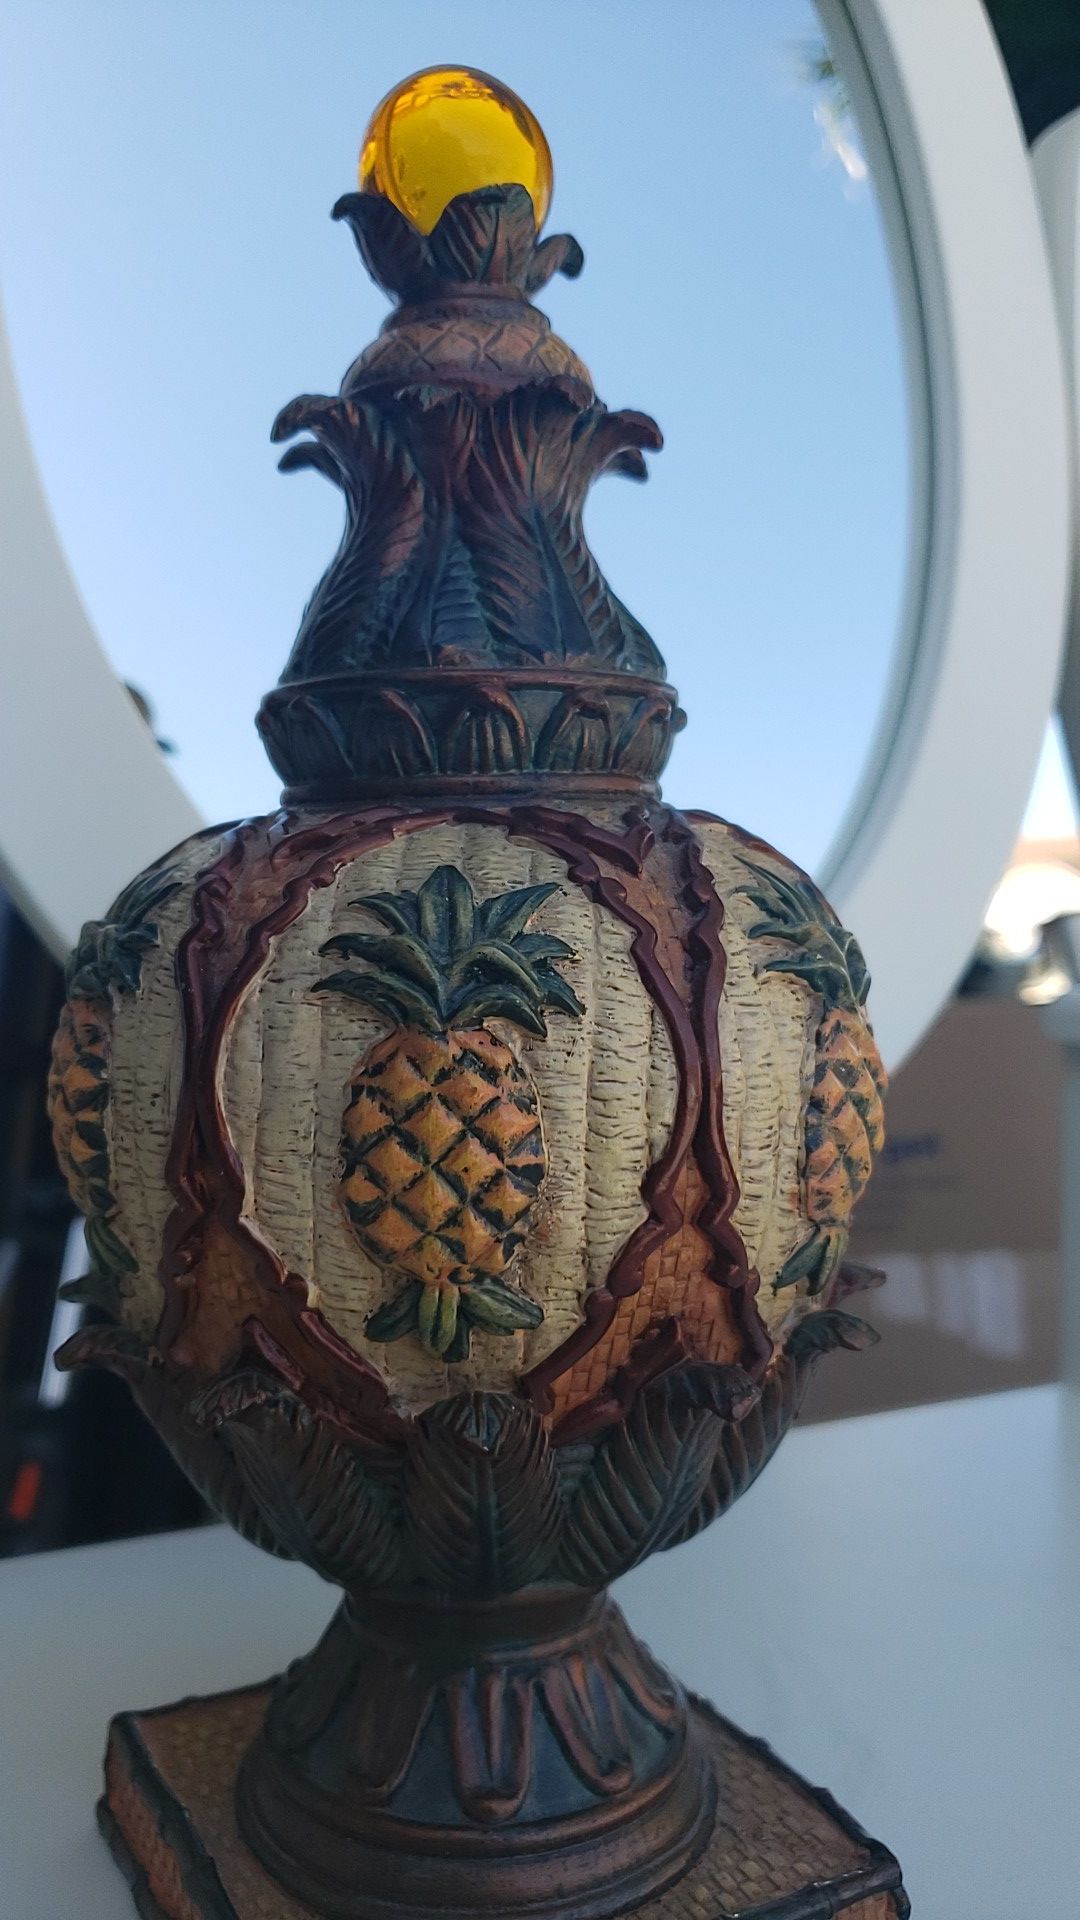 Pineapple decorative accent figure